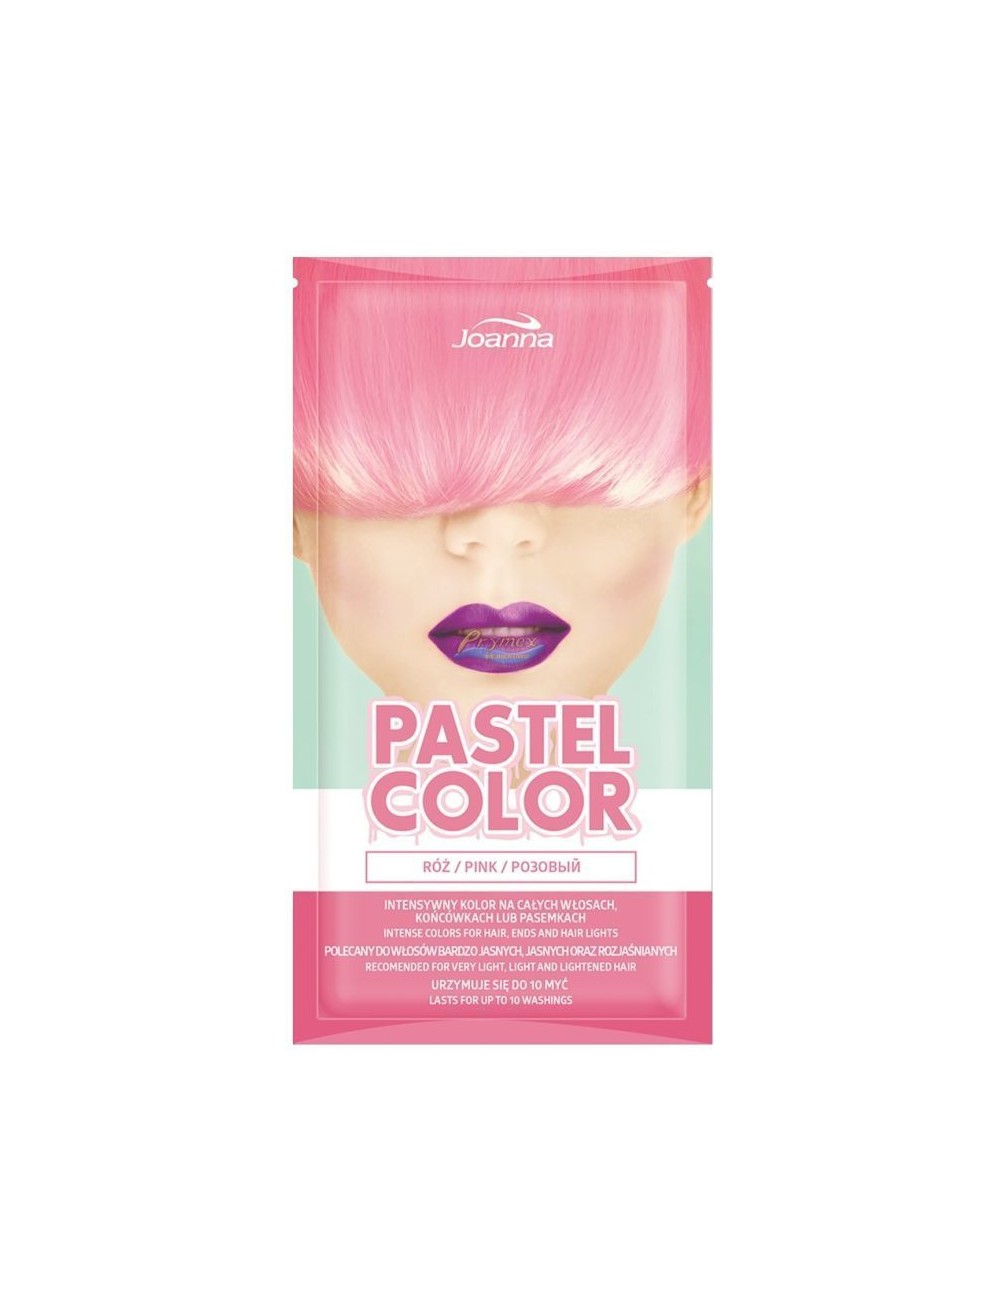 Joanna Pastel Color Róż Szamponetka Koloryzująca do Włosów 35 g